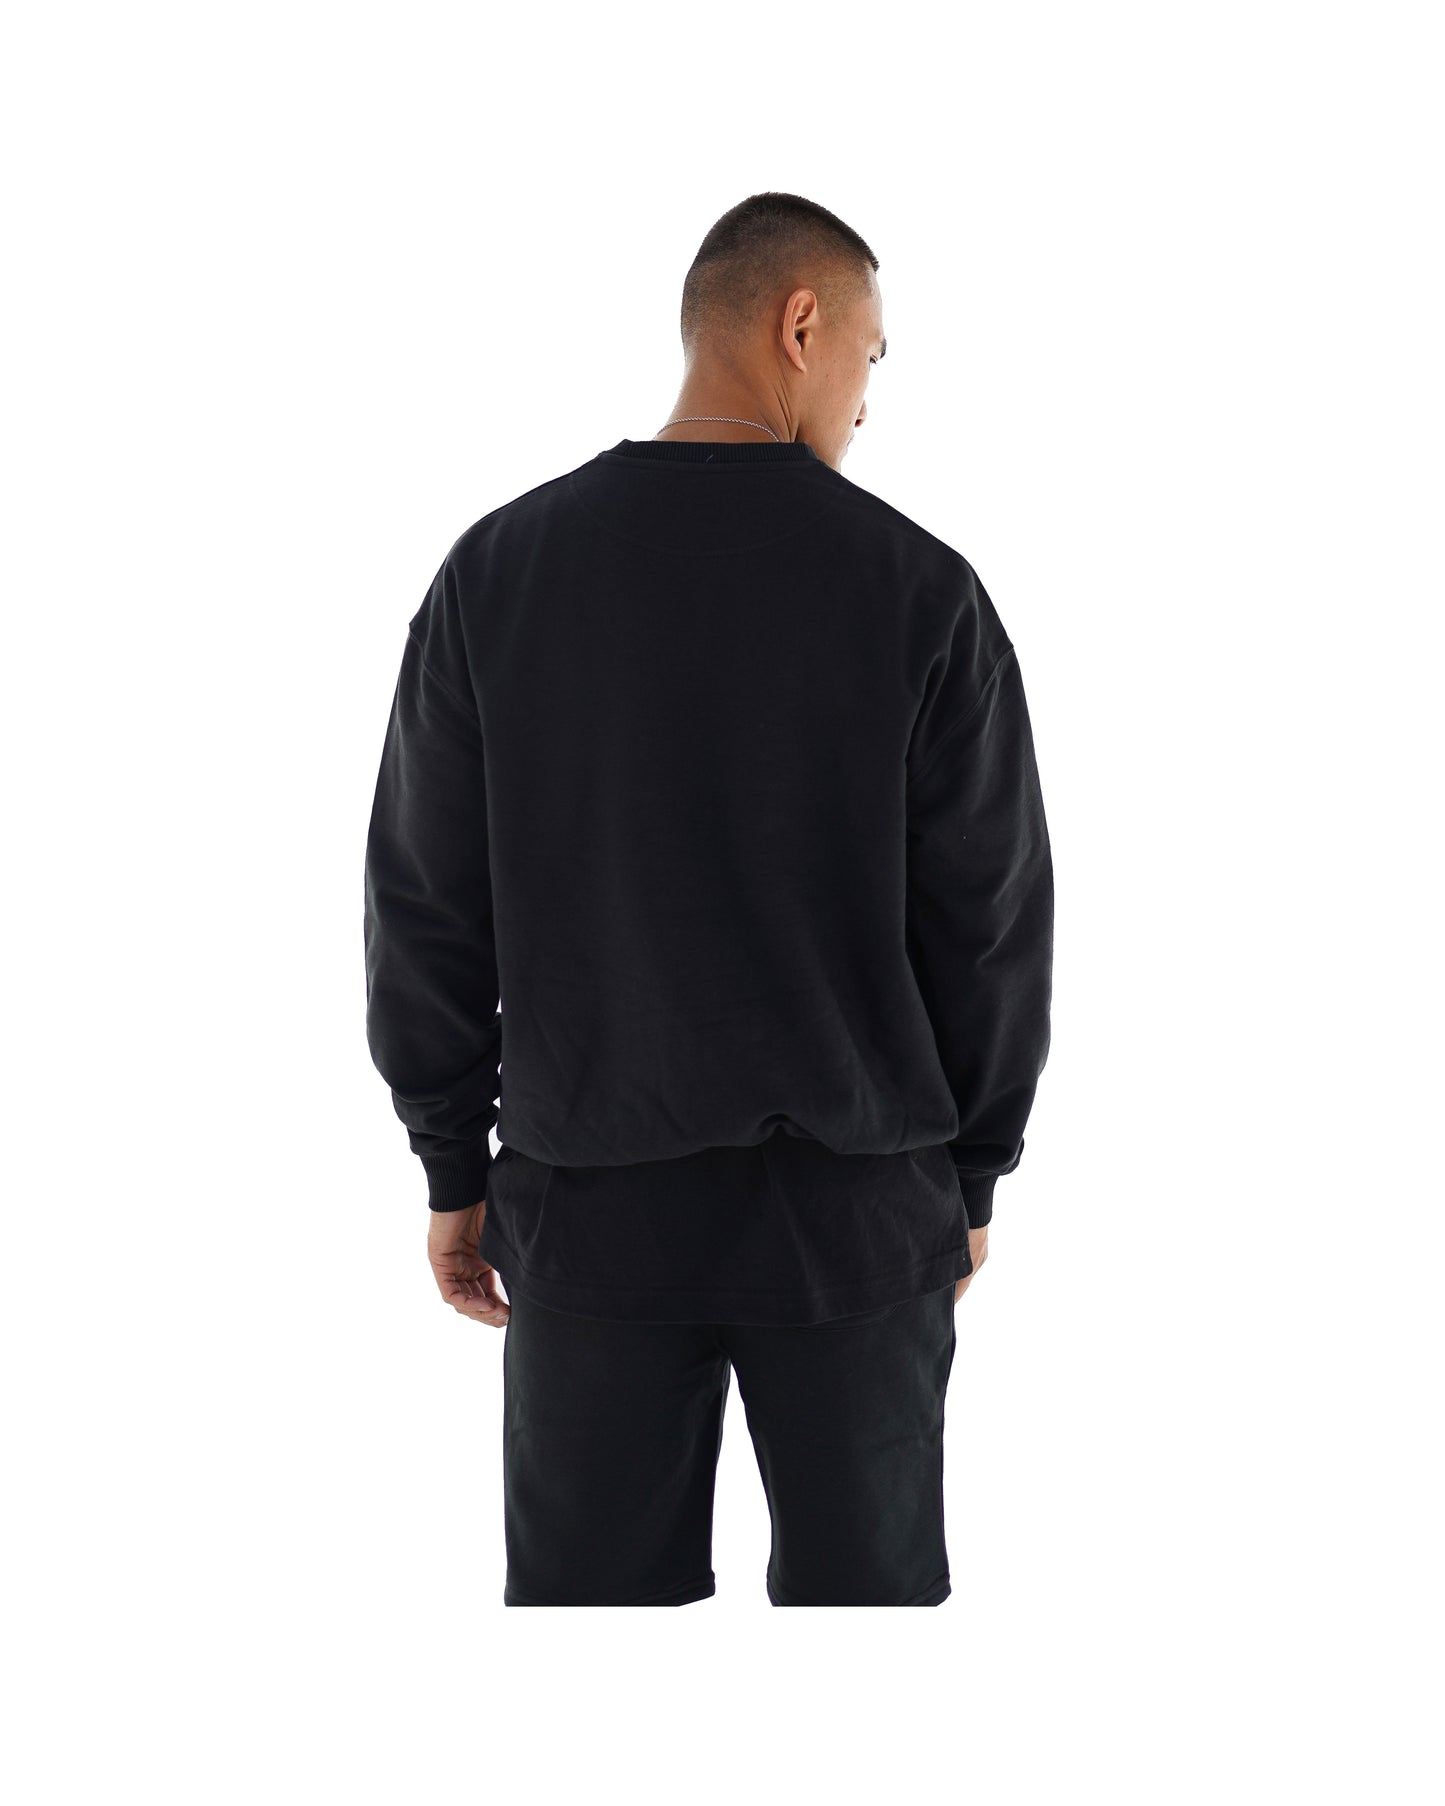 
                  
                    AL Contour Sweater - Black
                  
                